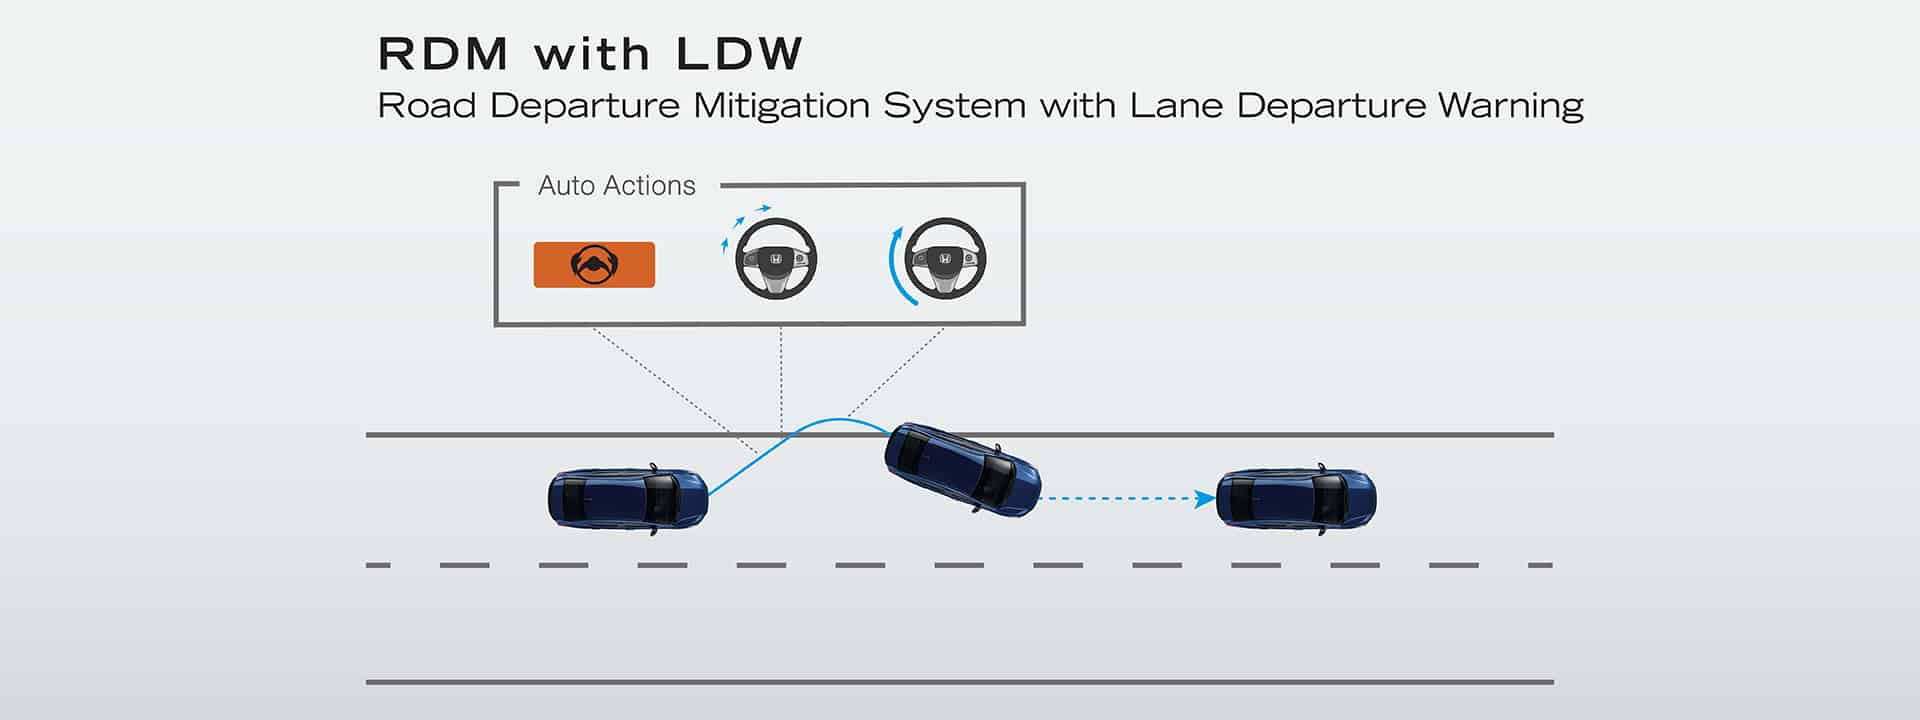 ระบบช่วยเตือนและควบคุมการขับขี่เมื่อรถกำลังจะออกนอกเลน RDM with LDW